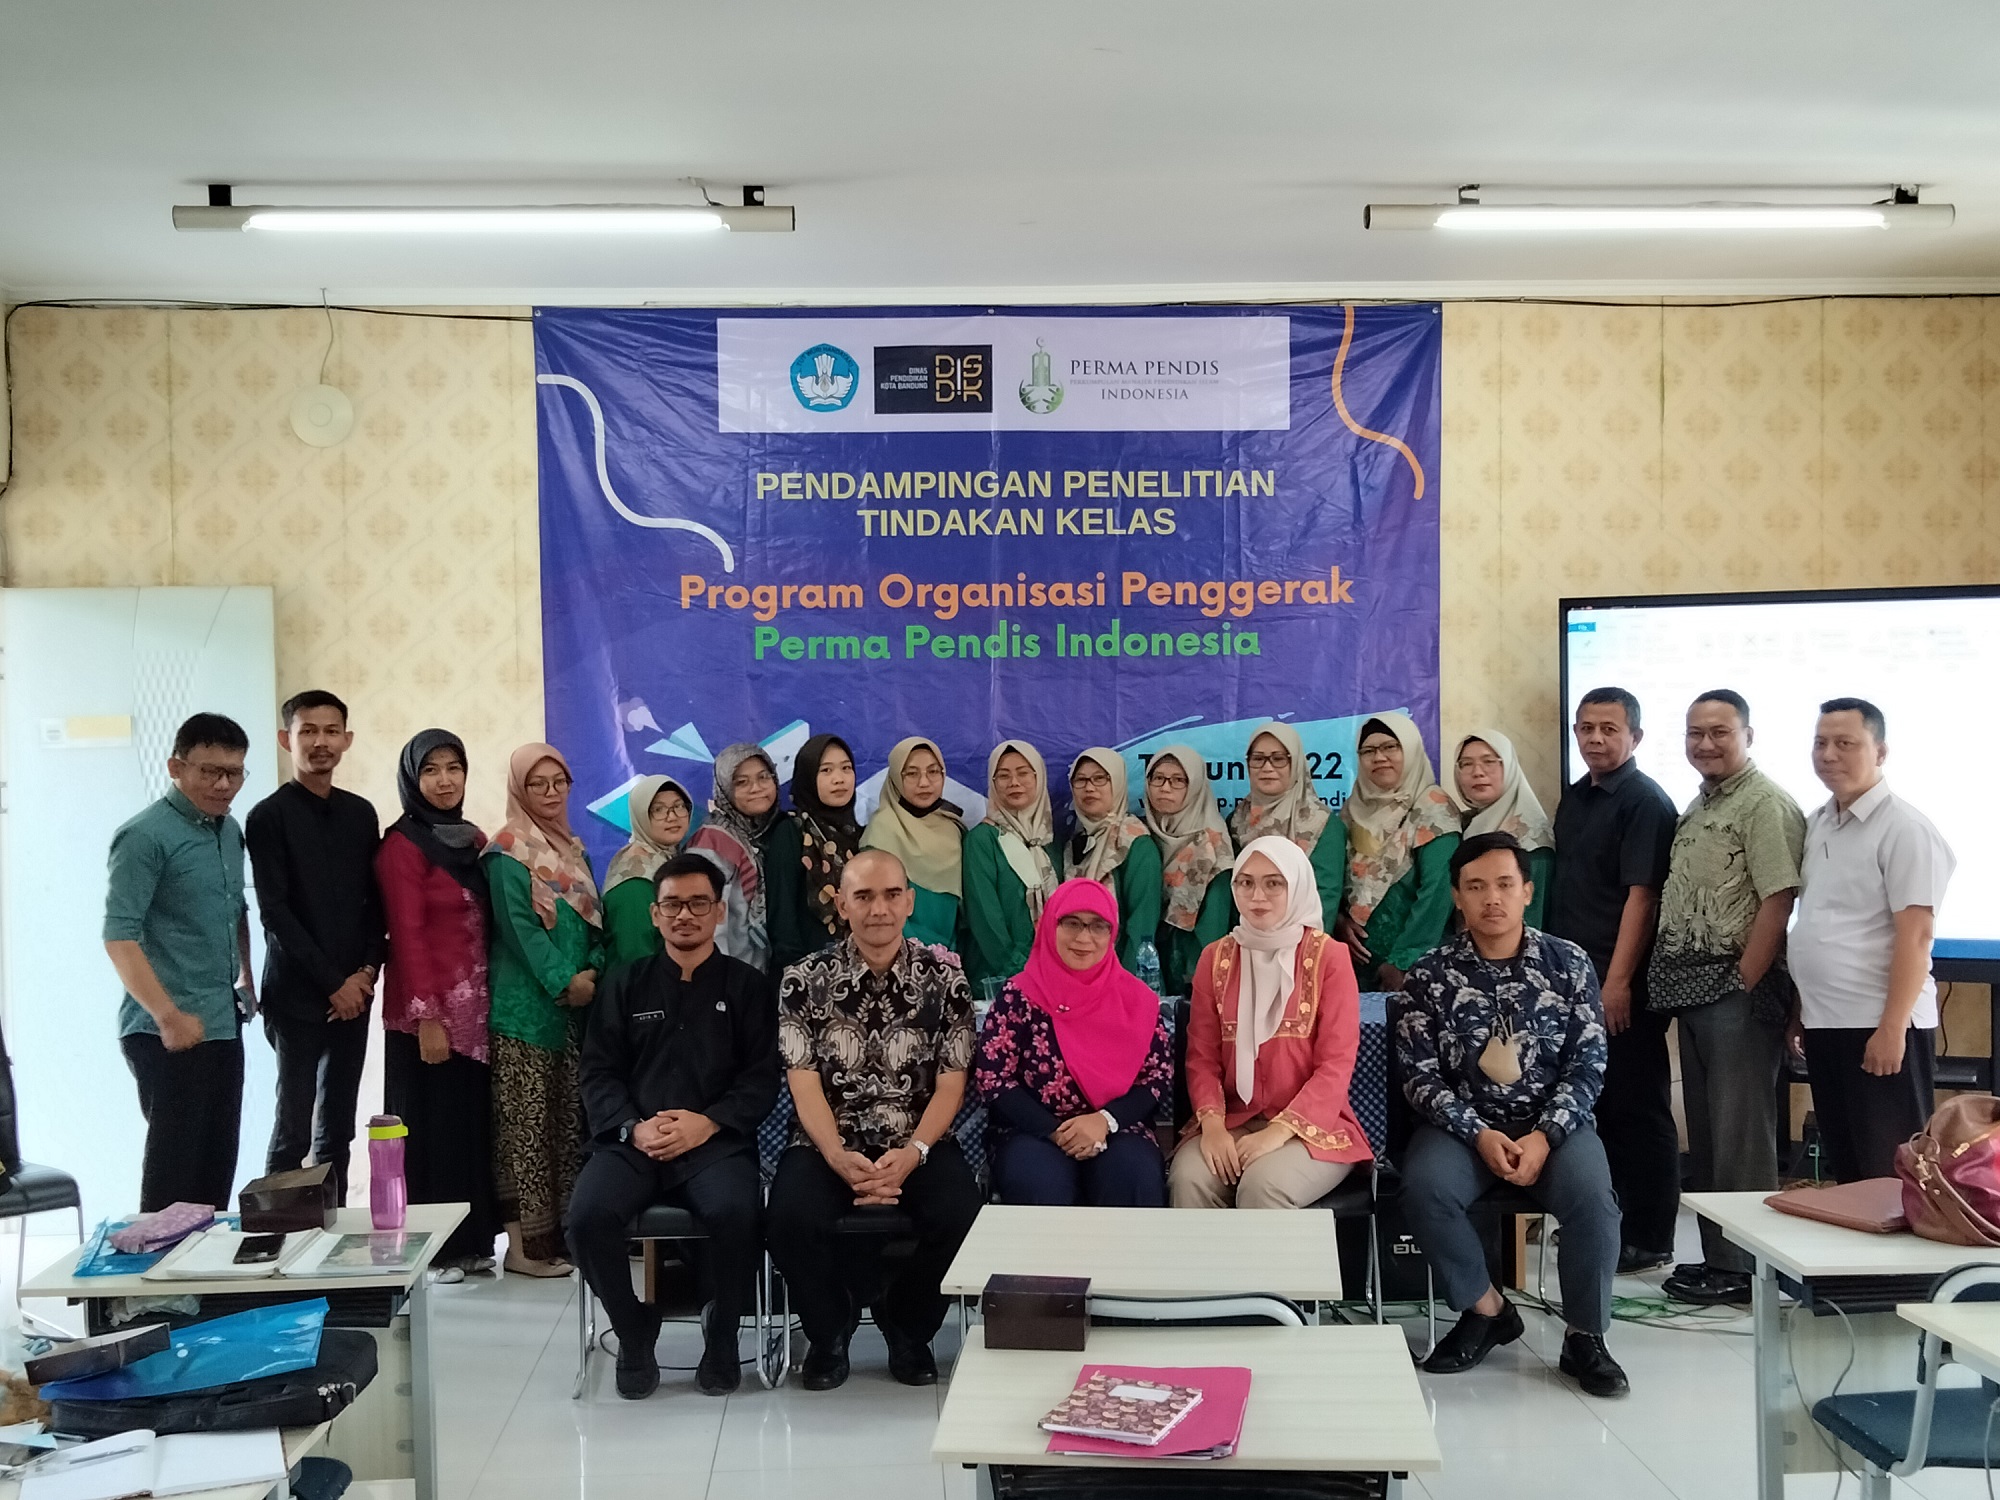 Pendamping penelitian tindakan kelas program organisasi penggerak perma pendis indonesia